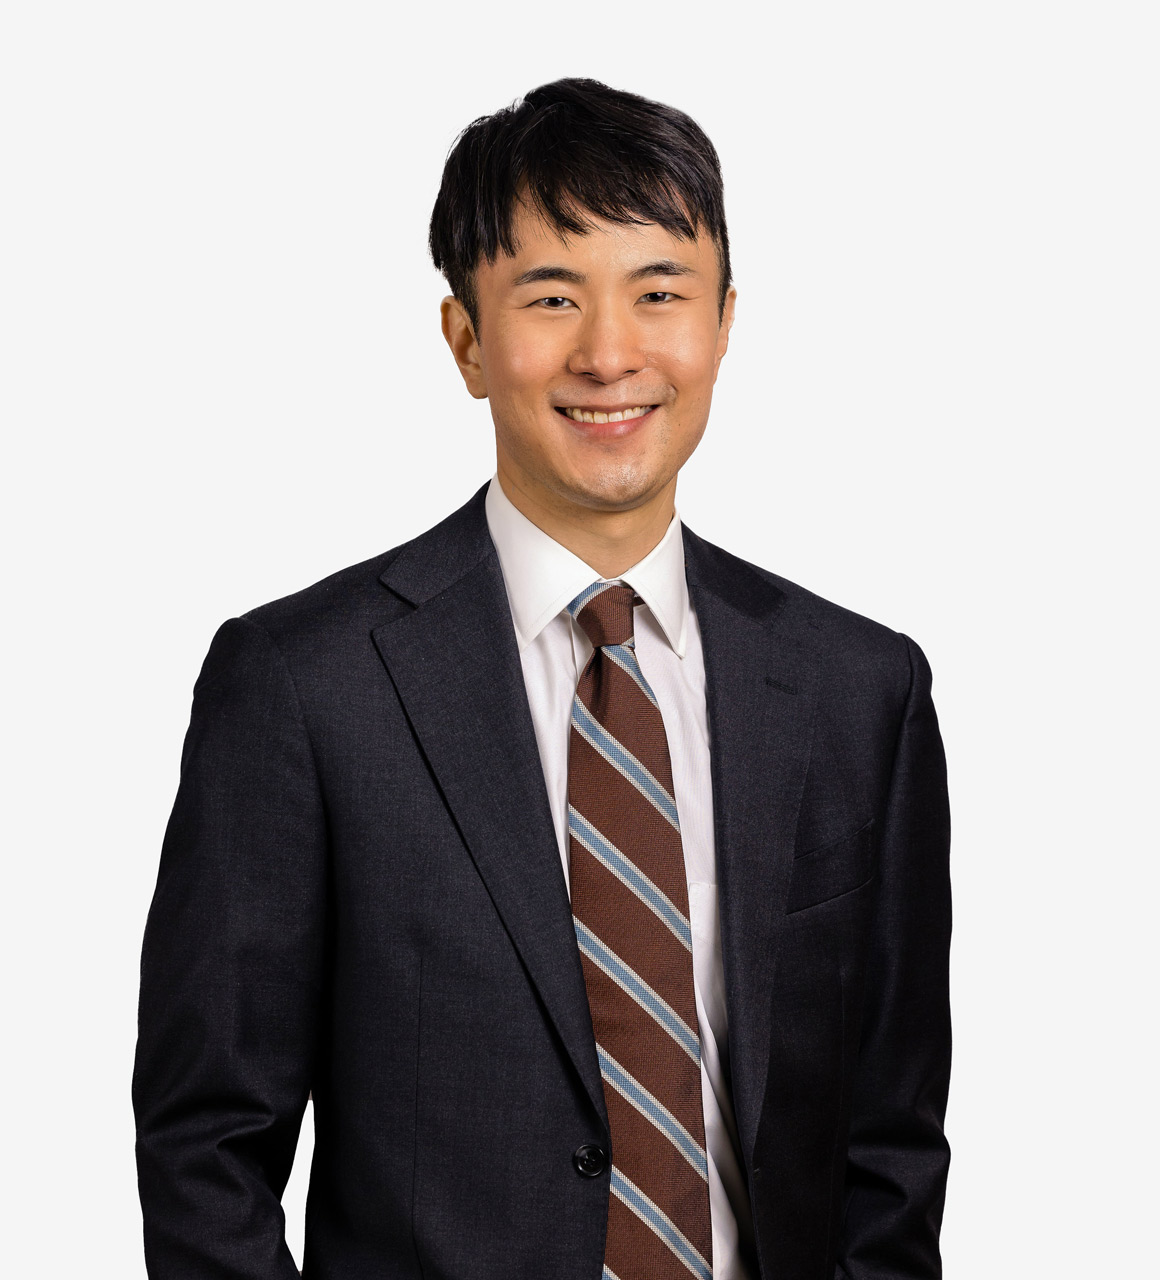 James Kim, Associate, Arent Fox LLP